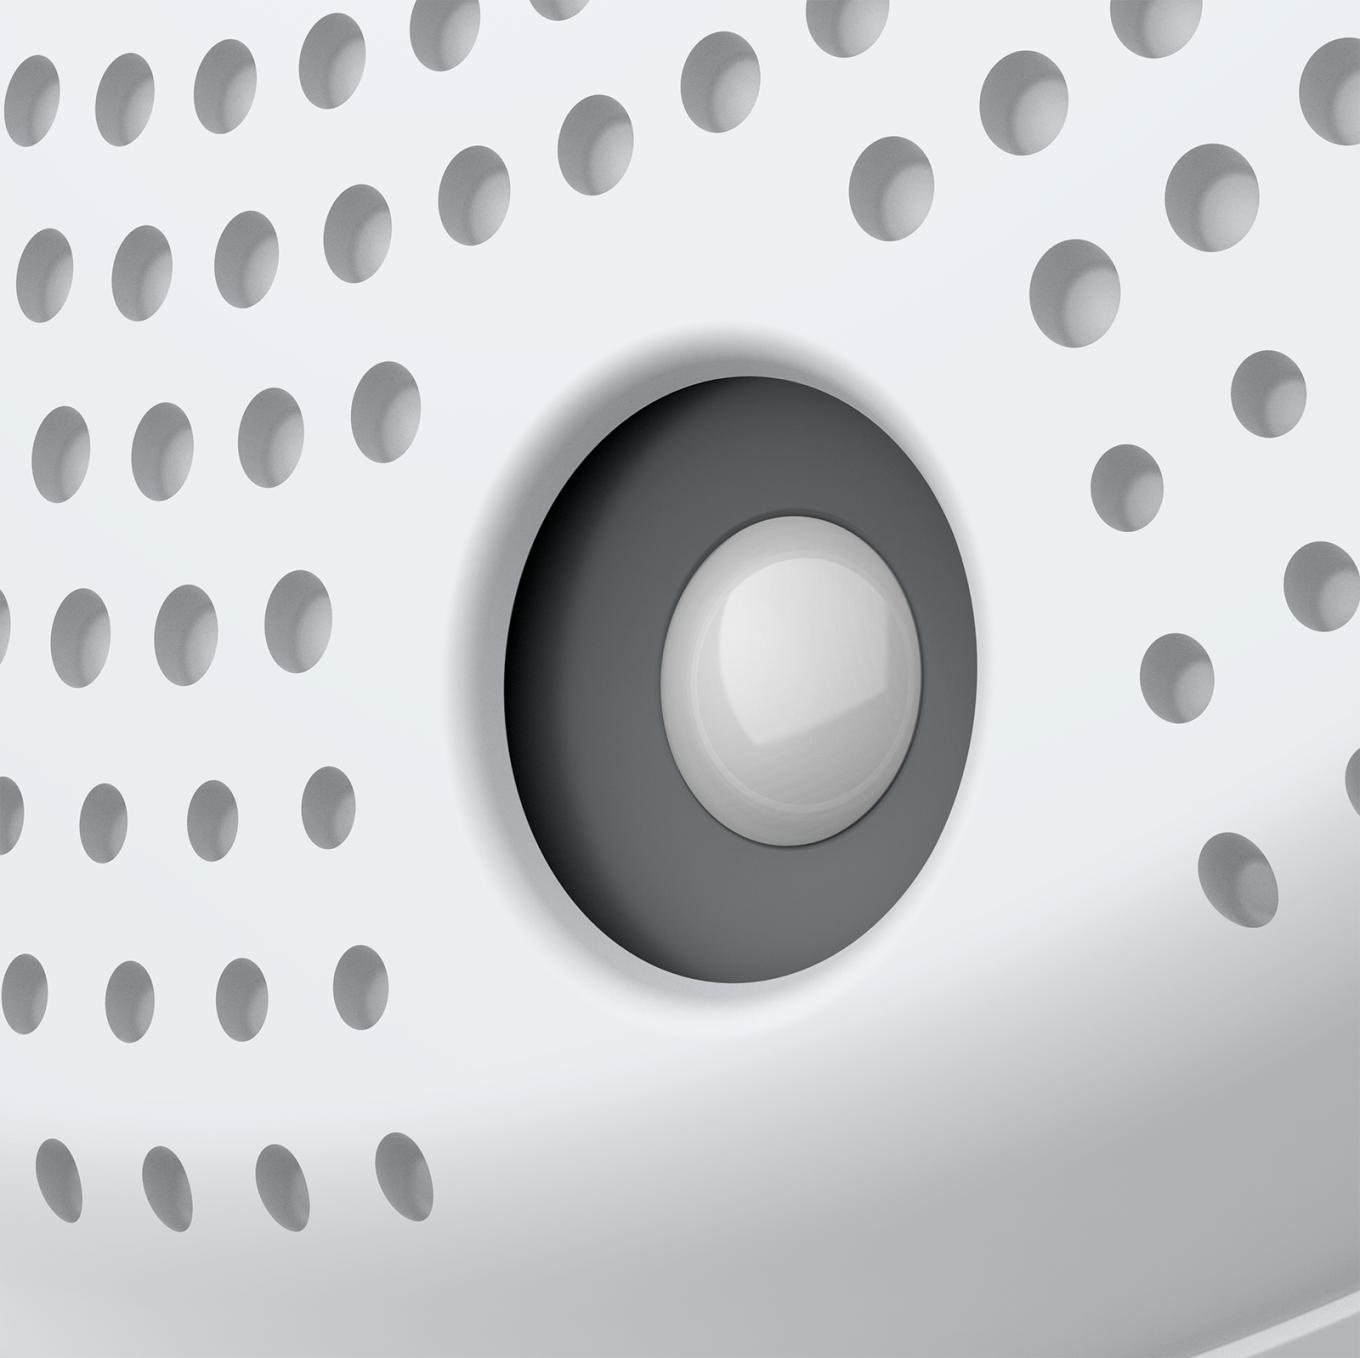 AXIS C1410 Network Mini Speaker com sensor PIR visto pelo ângulo esquerdo